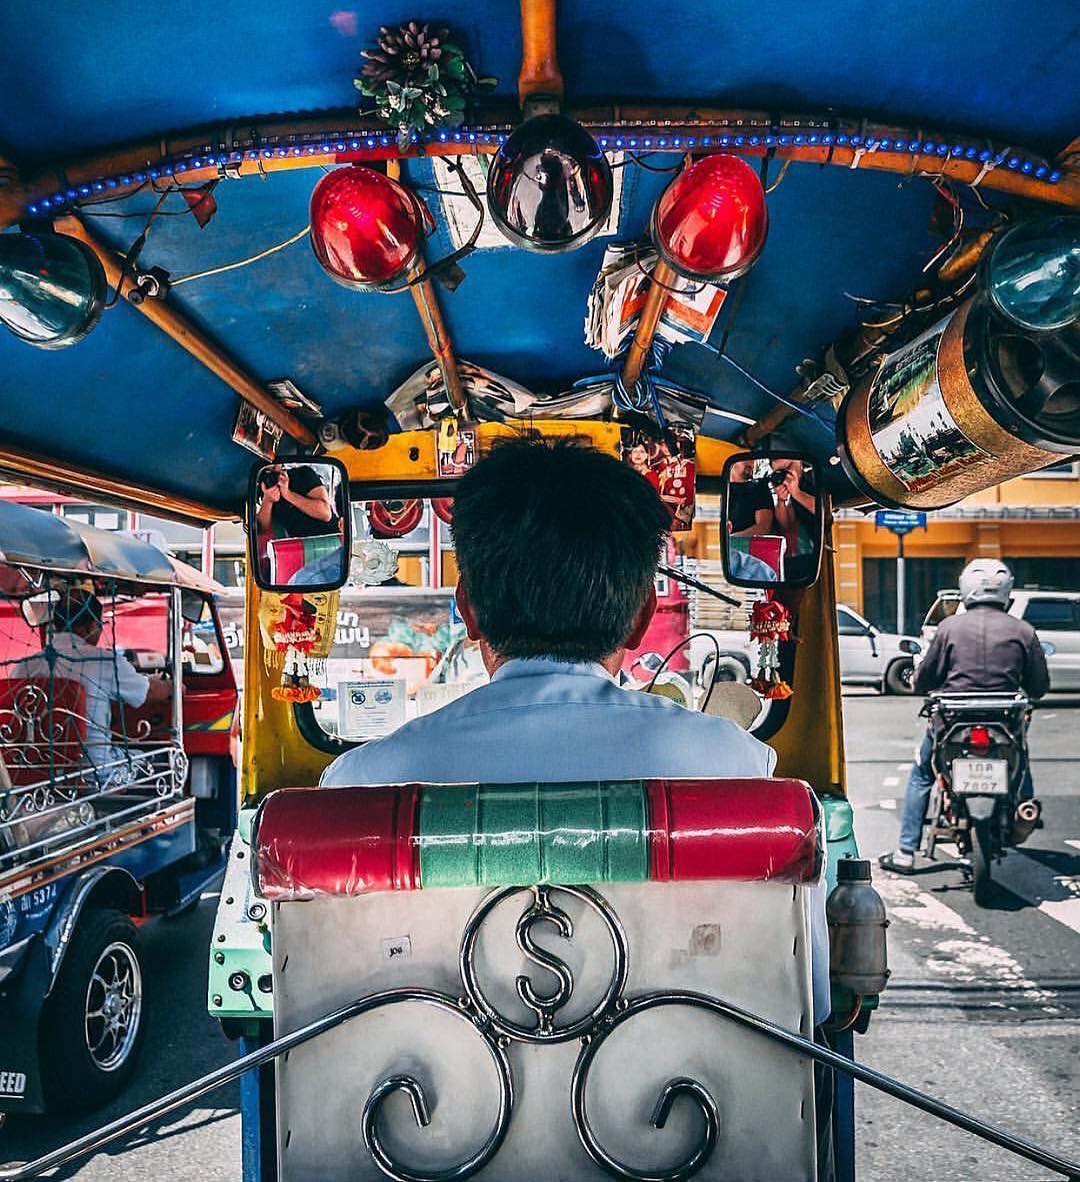 Ở Thái Lan, các bạn có thể thoải mái trả giá với tài xế xe tuk tuk